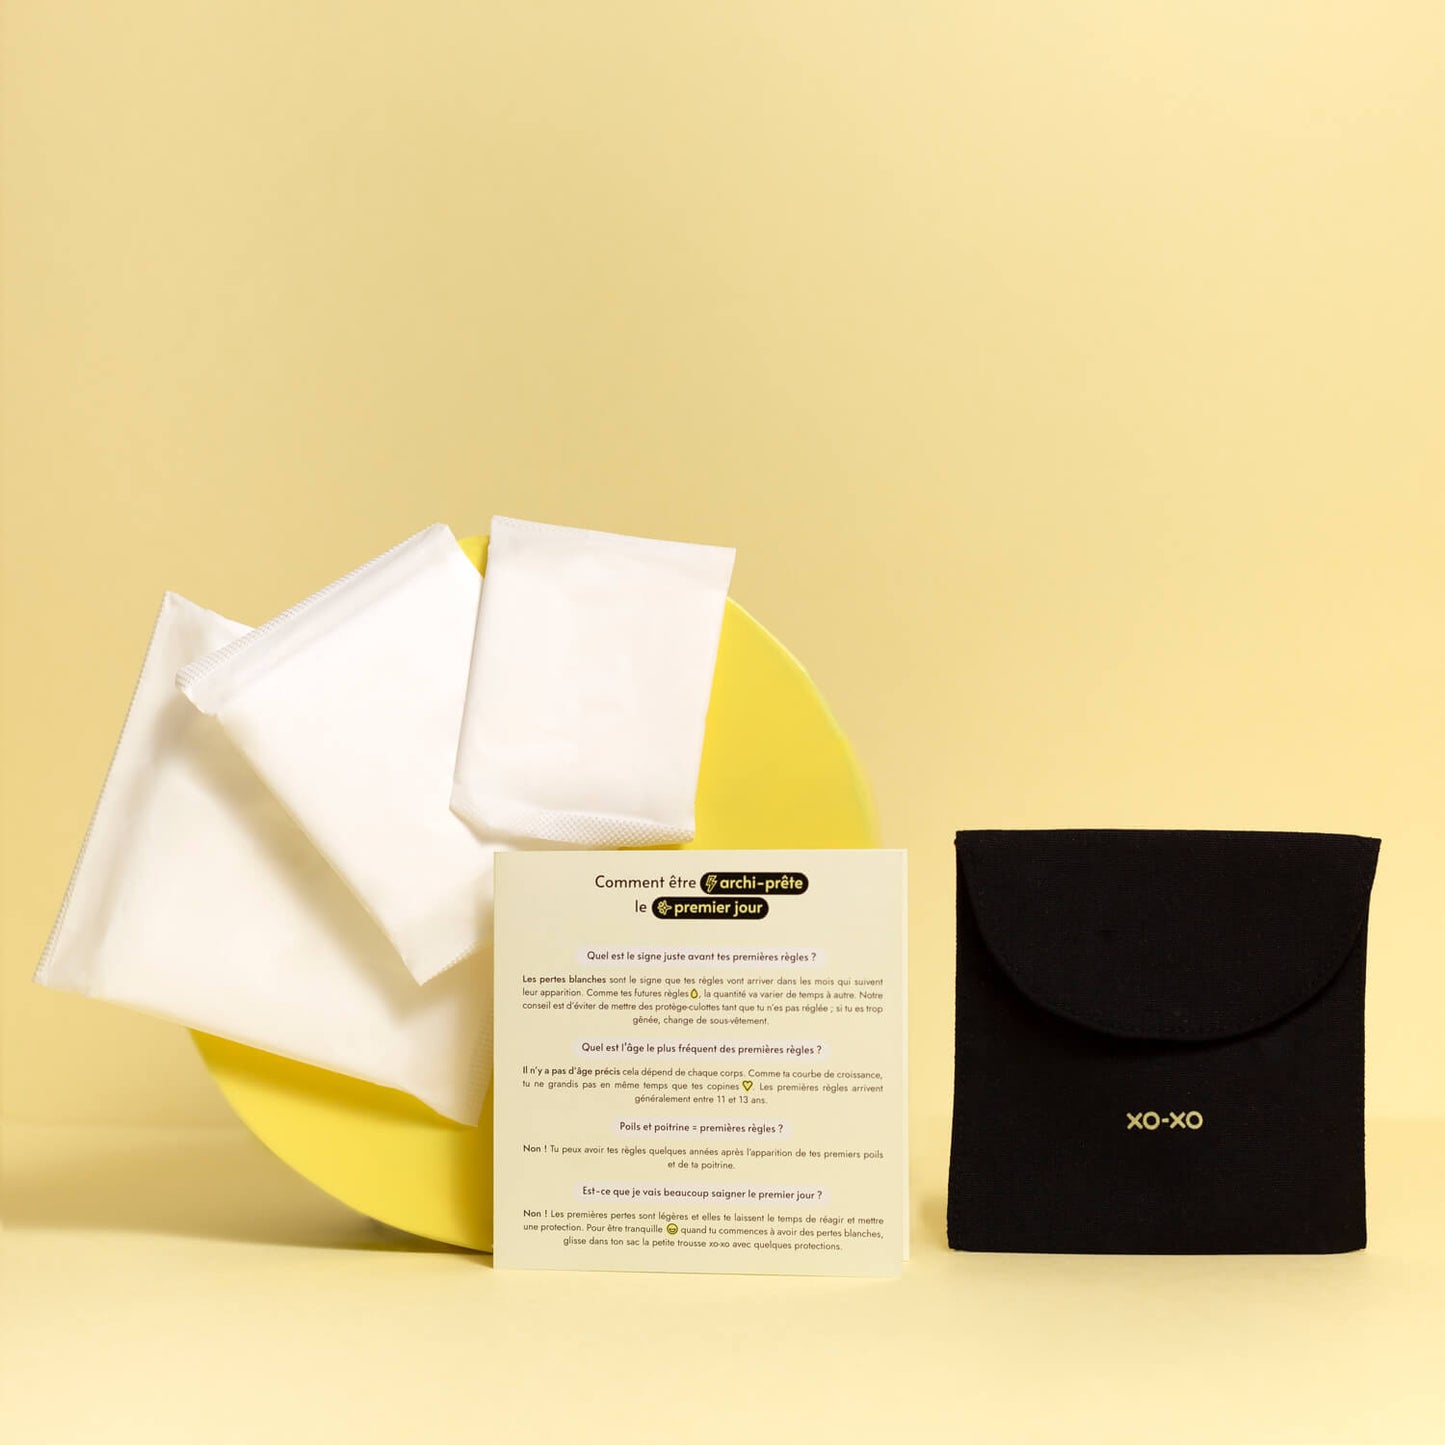 Serviettes hygiéniques en coton bio - pochette de rangement et guide du kit premières règles